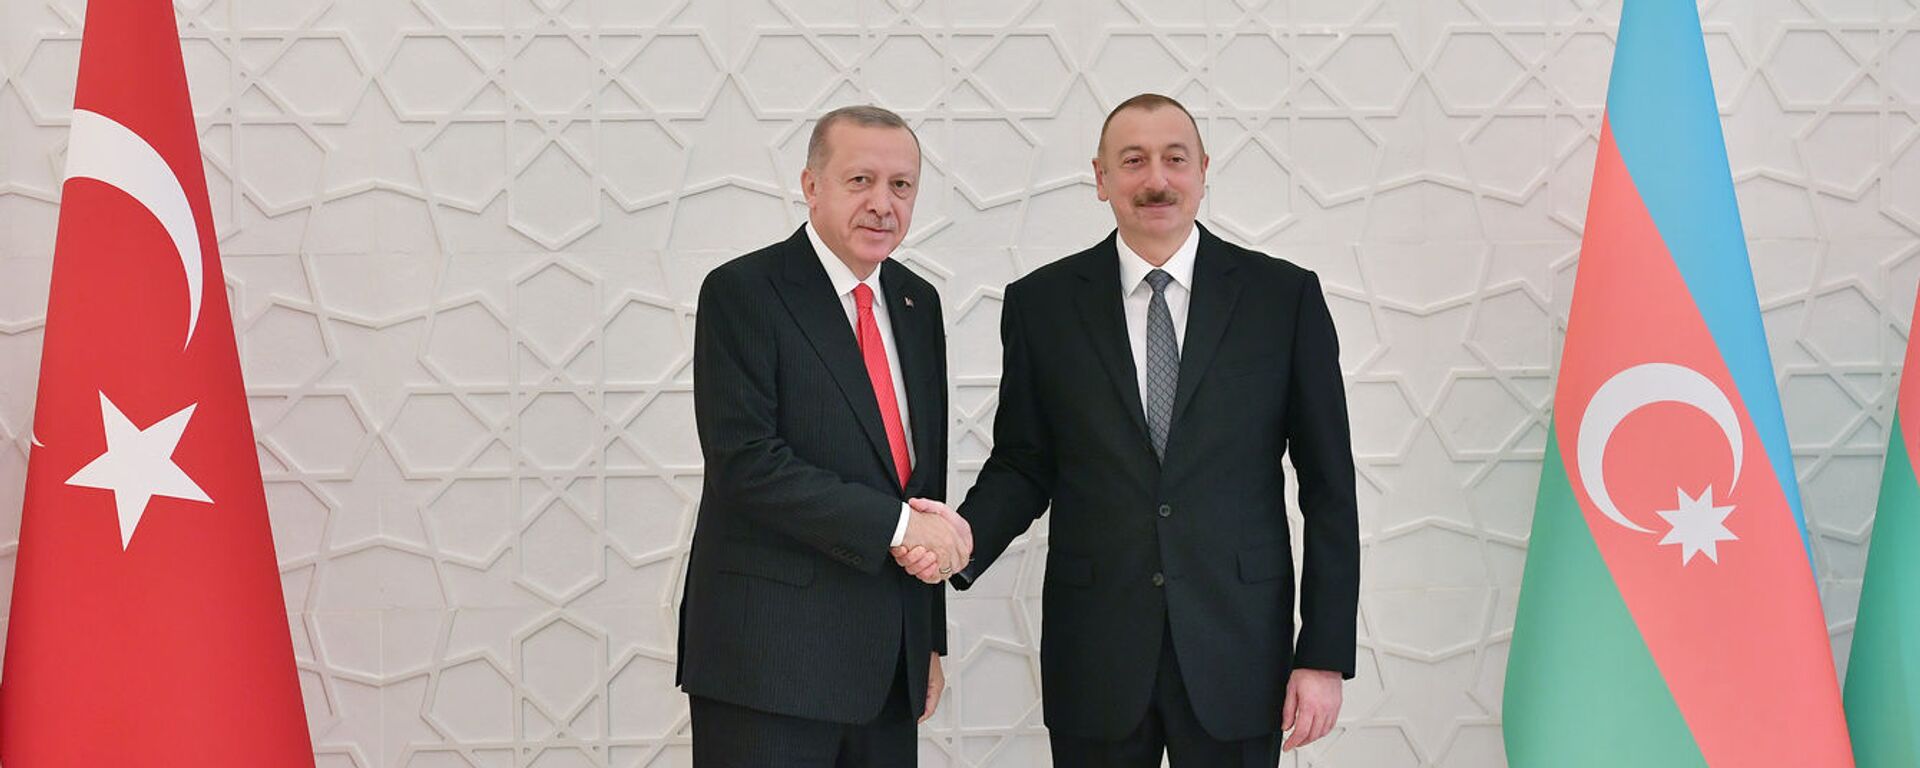 Президент Азербайджана Ильхам Алиев и Президент Турции Реджеп Тайип Эрдоган - Sputnik Azərbaycan, 1920, 24.04.2021